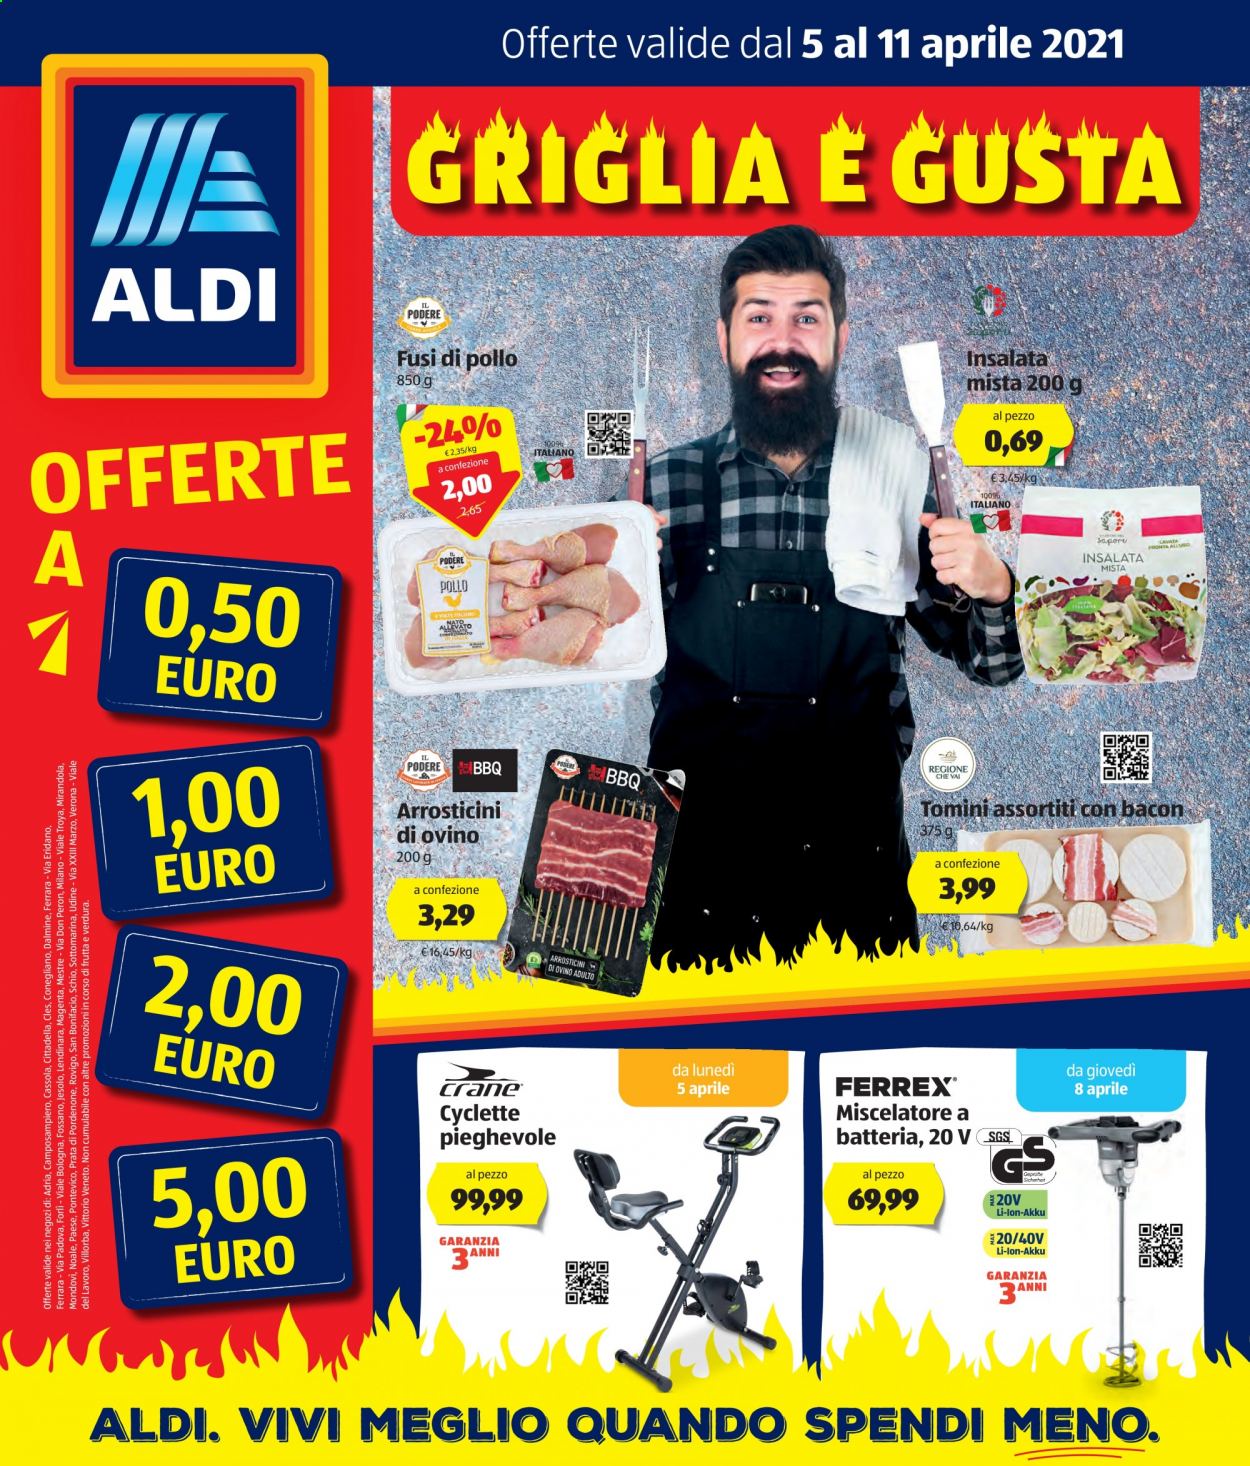 thumbnail - Volantino Aldi - 5/4/2021 - 11/4/2021 - Prodotti in offerta - insalata mista, fusi di pollo, arrosticini, tomino, cyclette. Pagina 1.